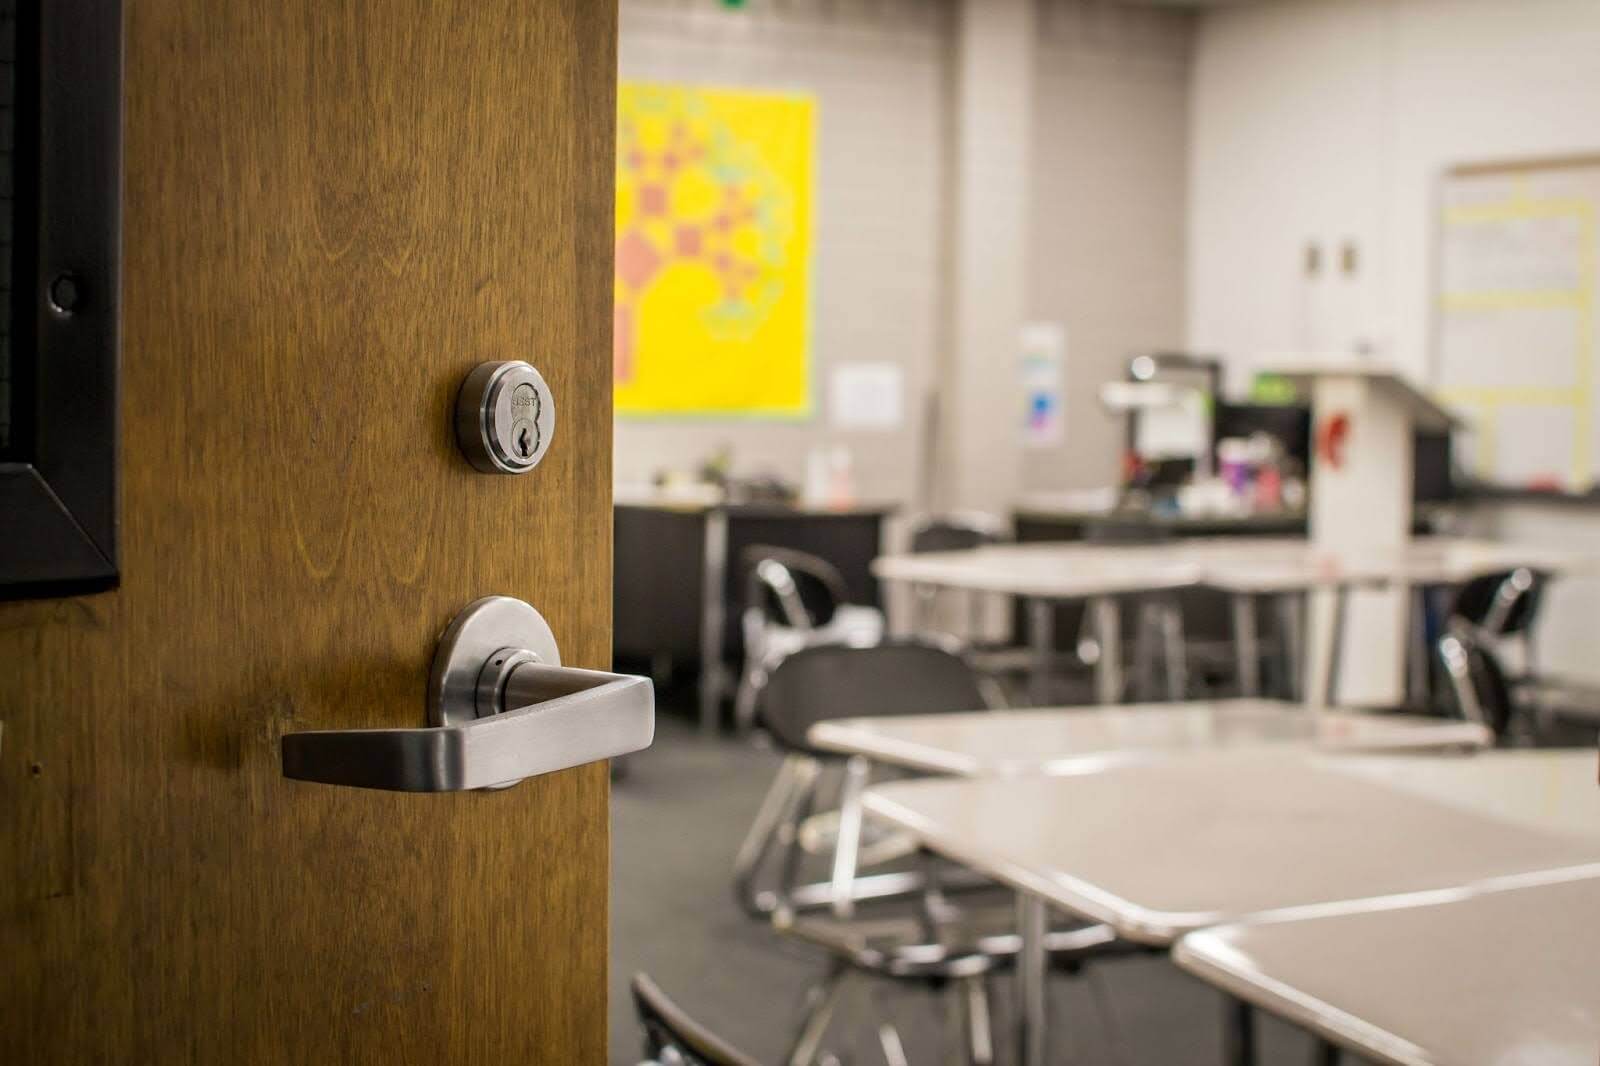 Opened door in a classroom.